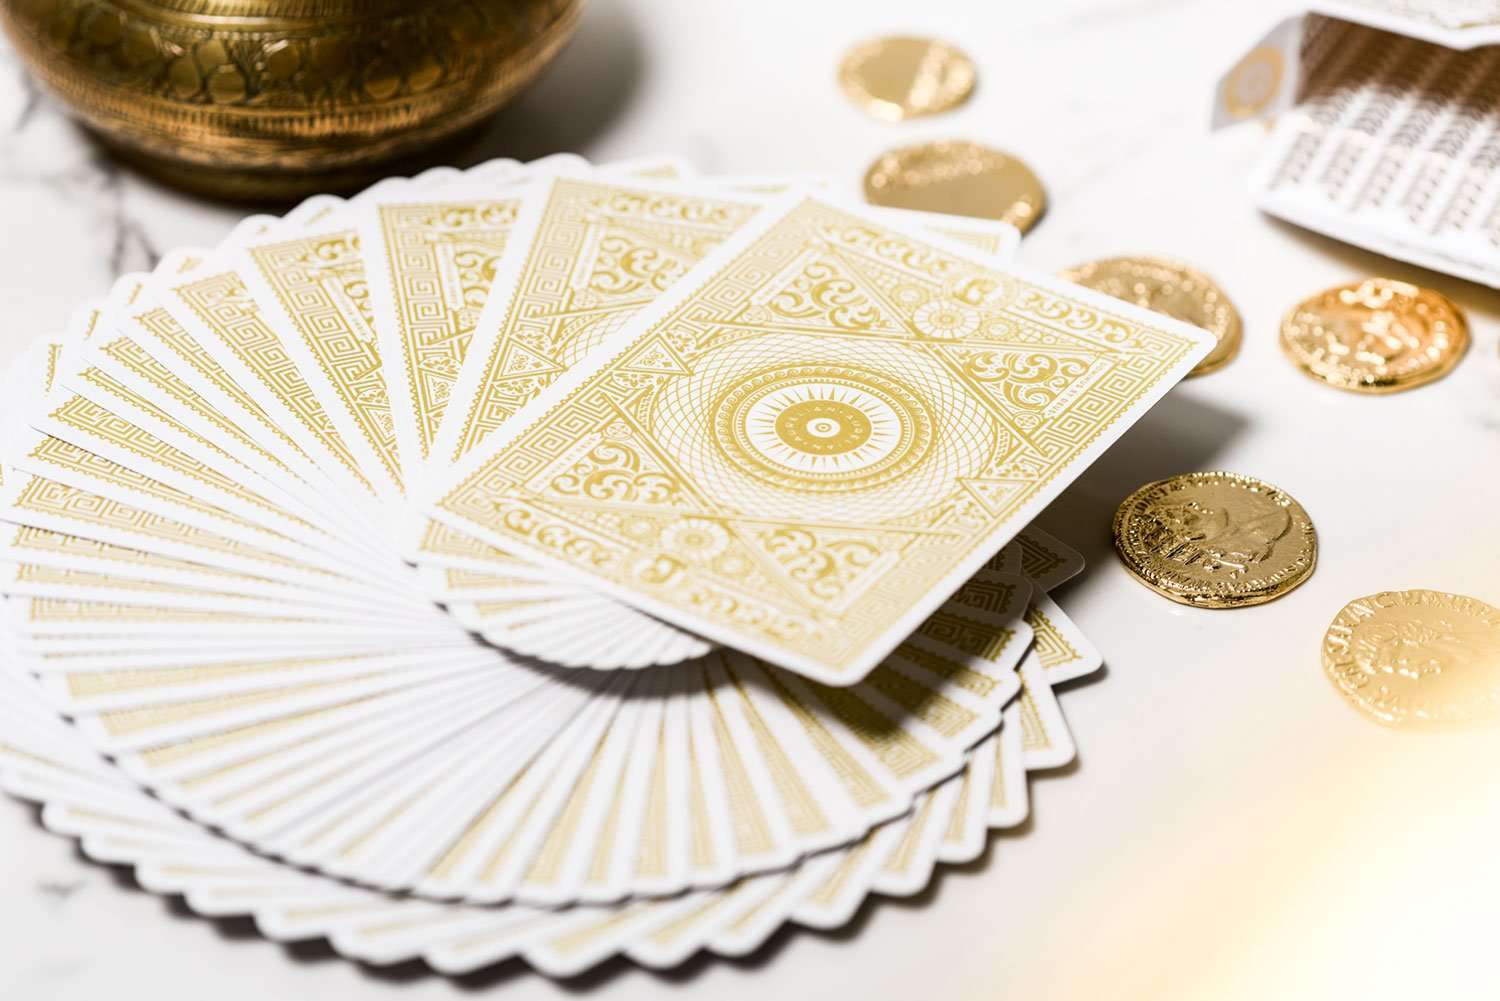 PlayingCardDecks.com-Aurelian White Playing Cards Cartamundi